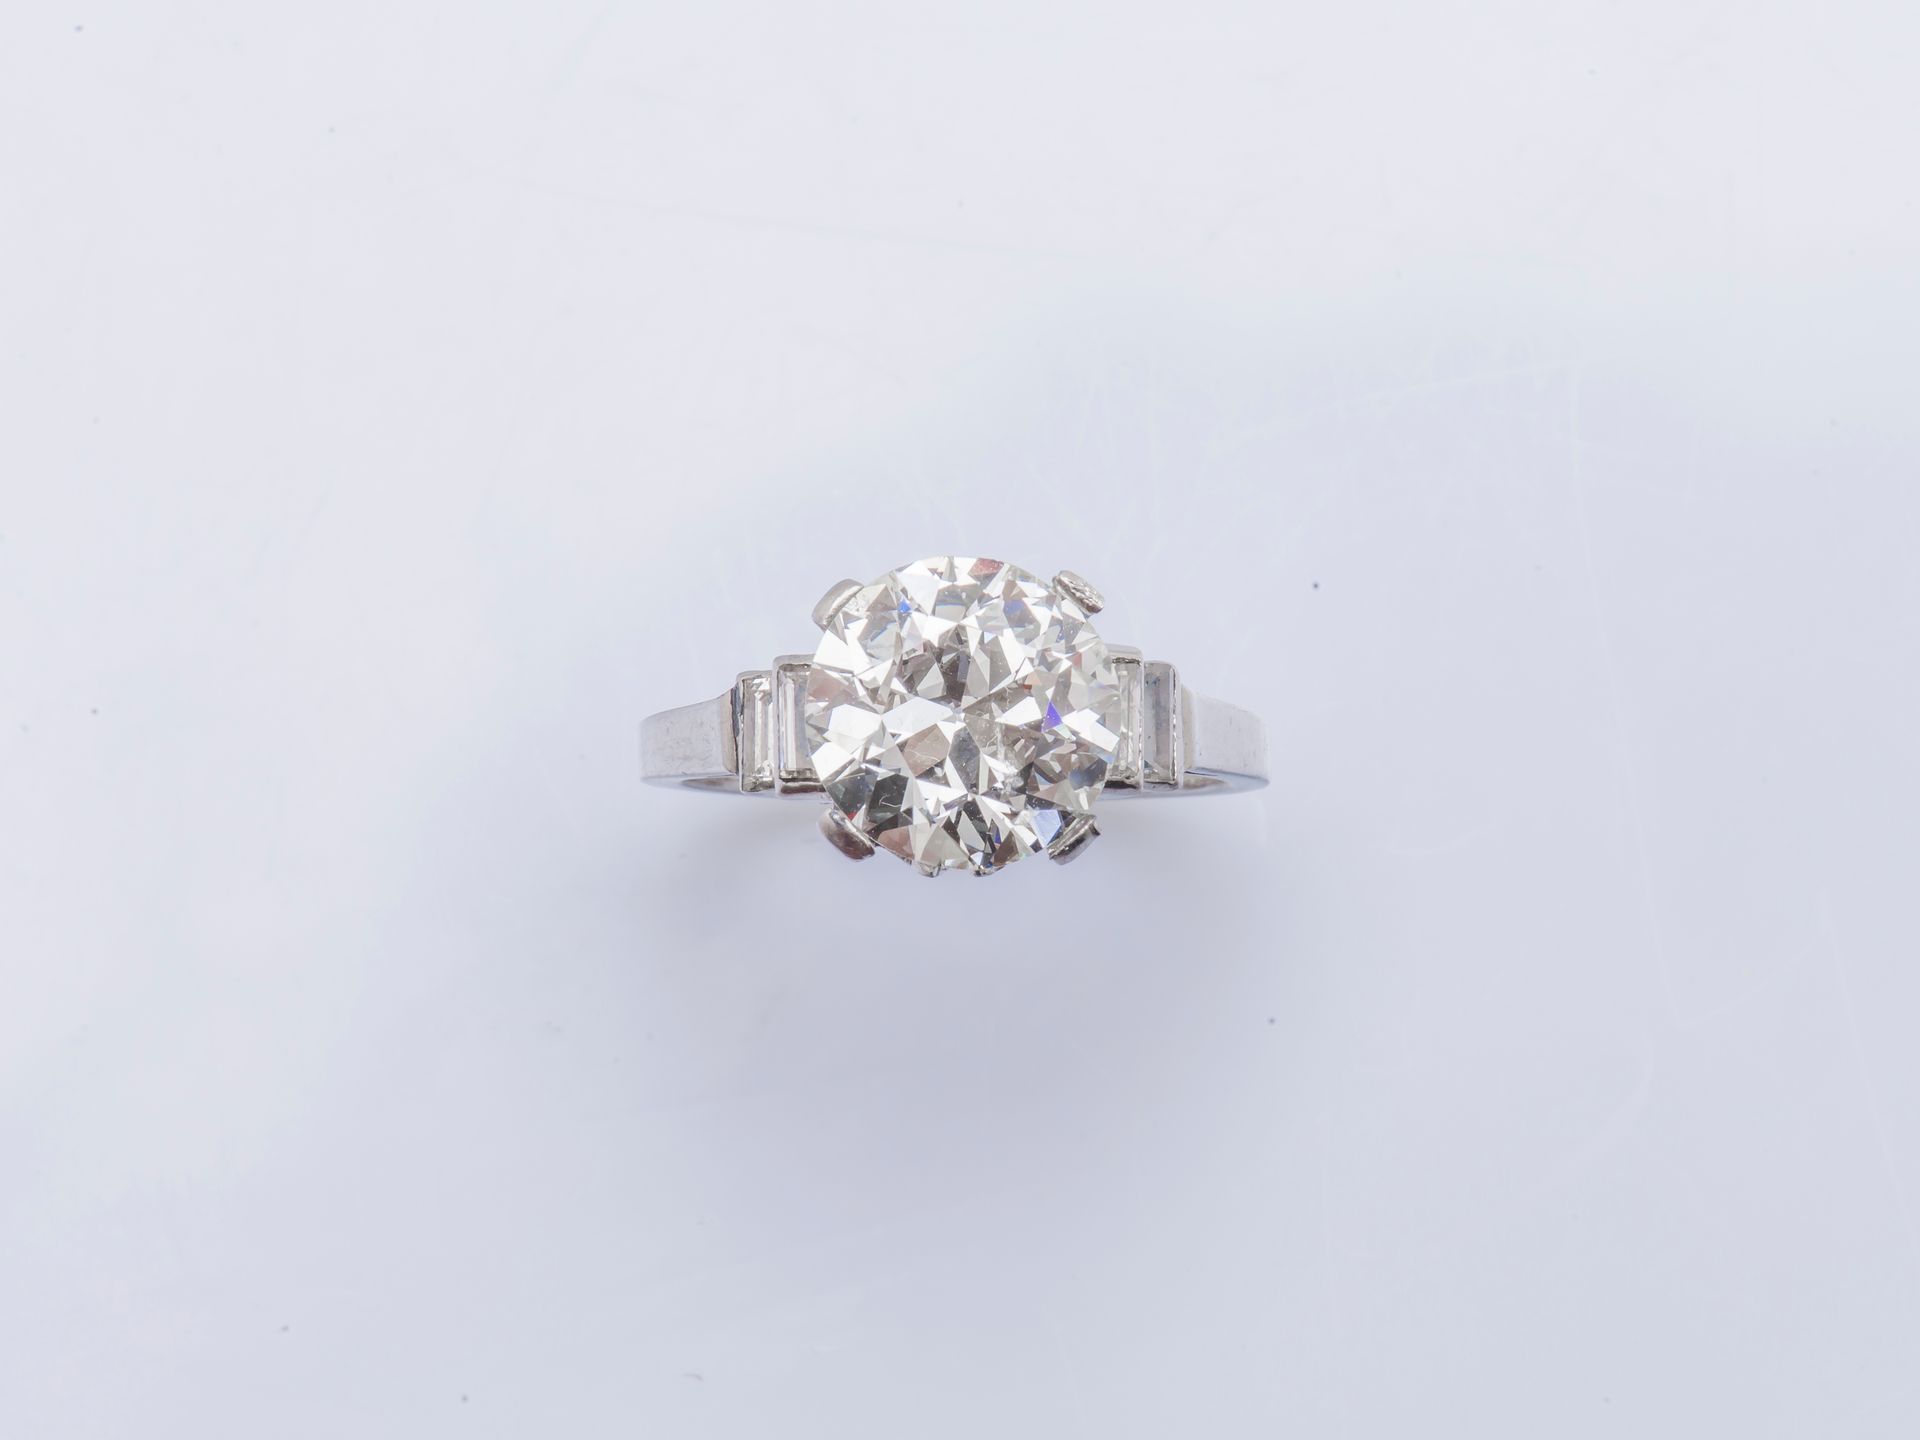 Null 铂金（千分之九十五）单钻戒指，镶嵌一颗重达3.53克拉的明亮式切割钻石（58个刻面）和四颗长方形钻石。

手指大小：51。毛重：5.6克 箱子